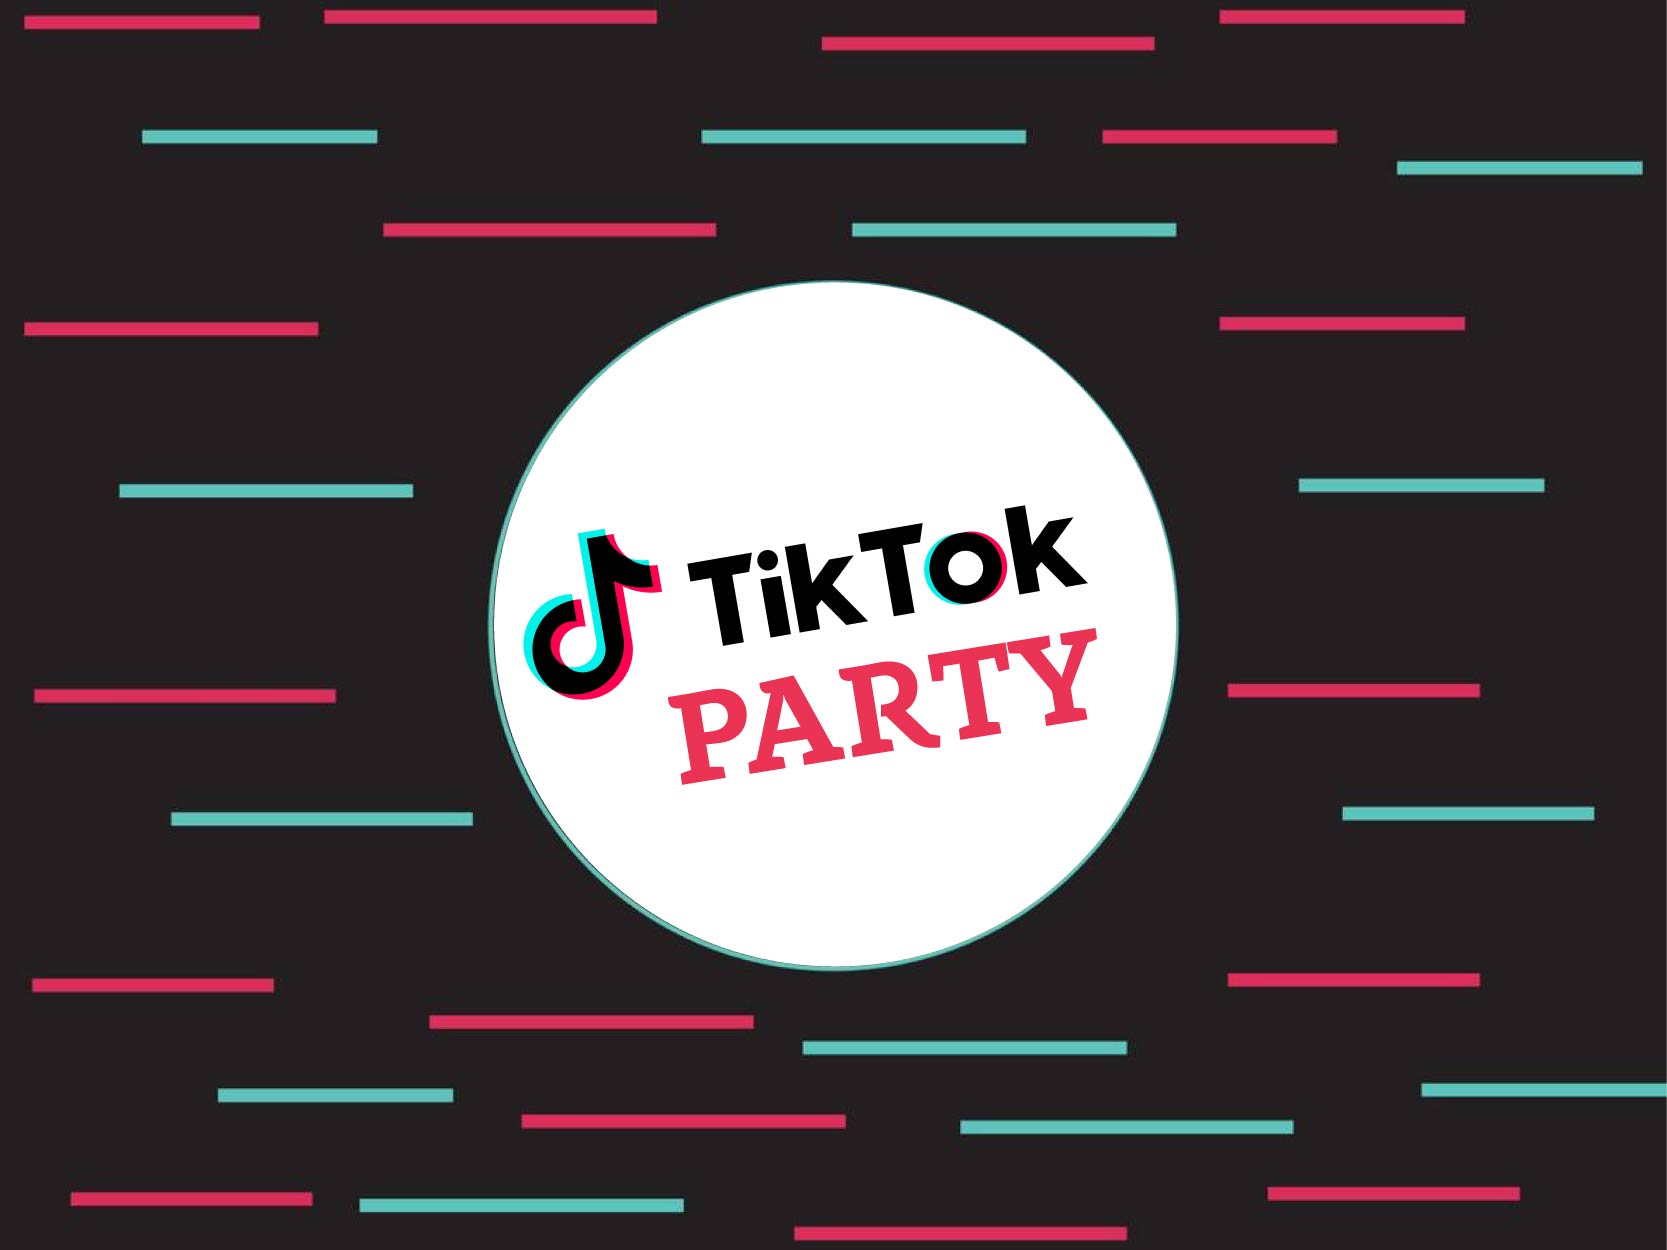 TikTok Party